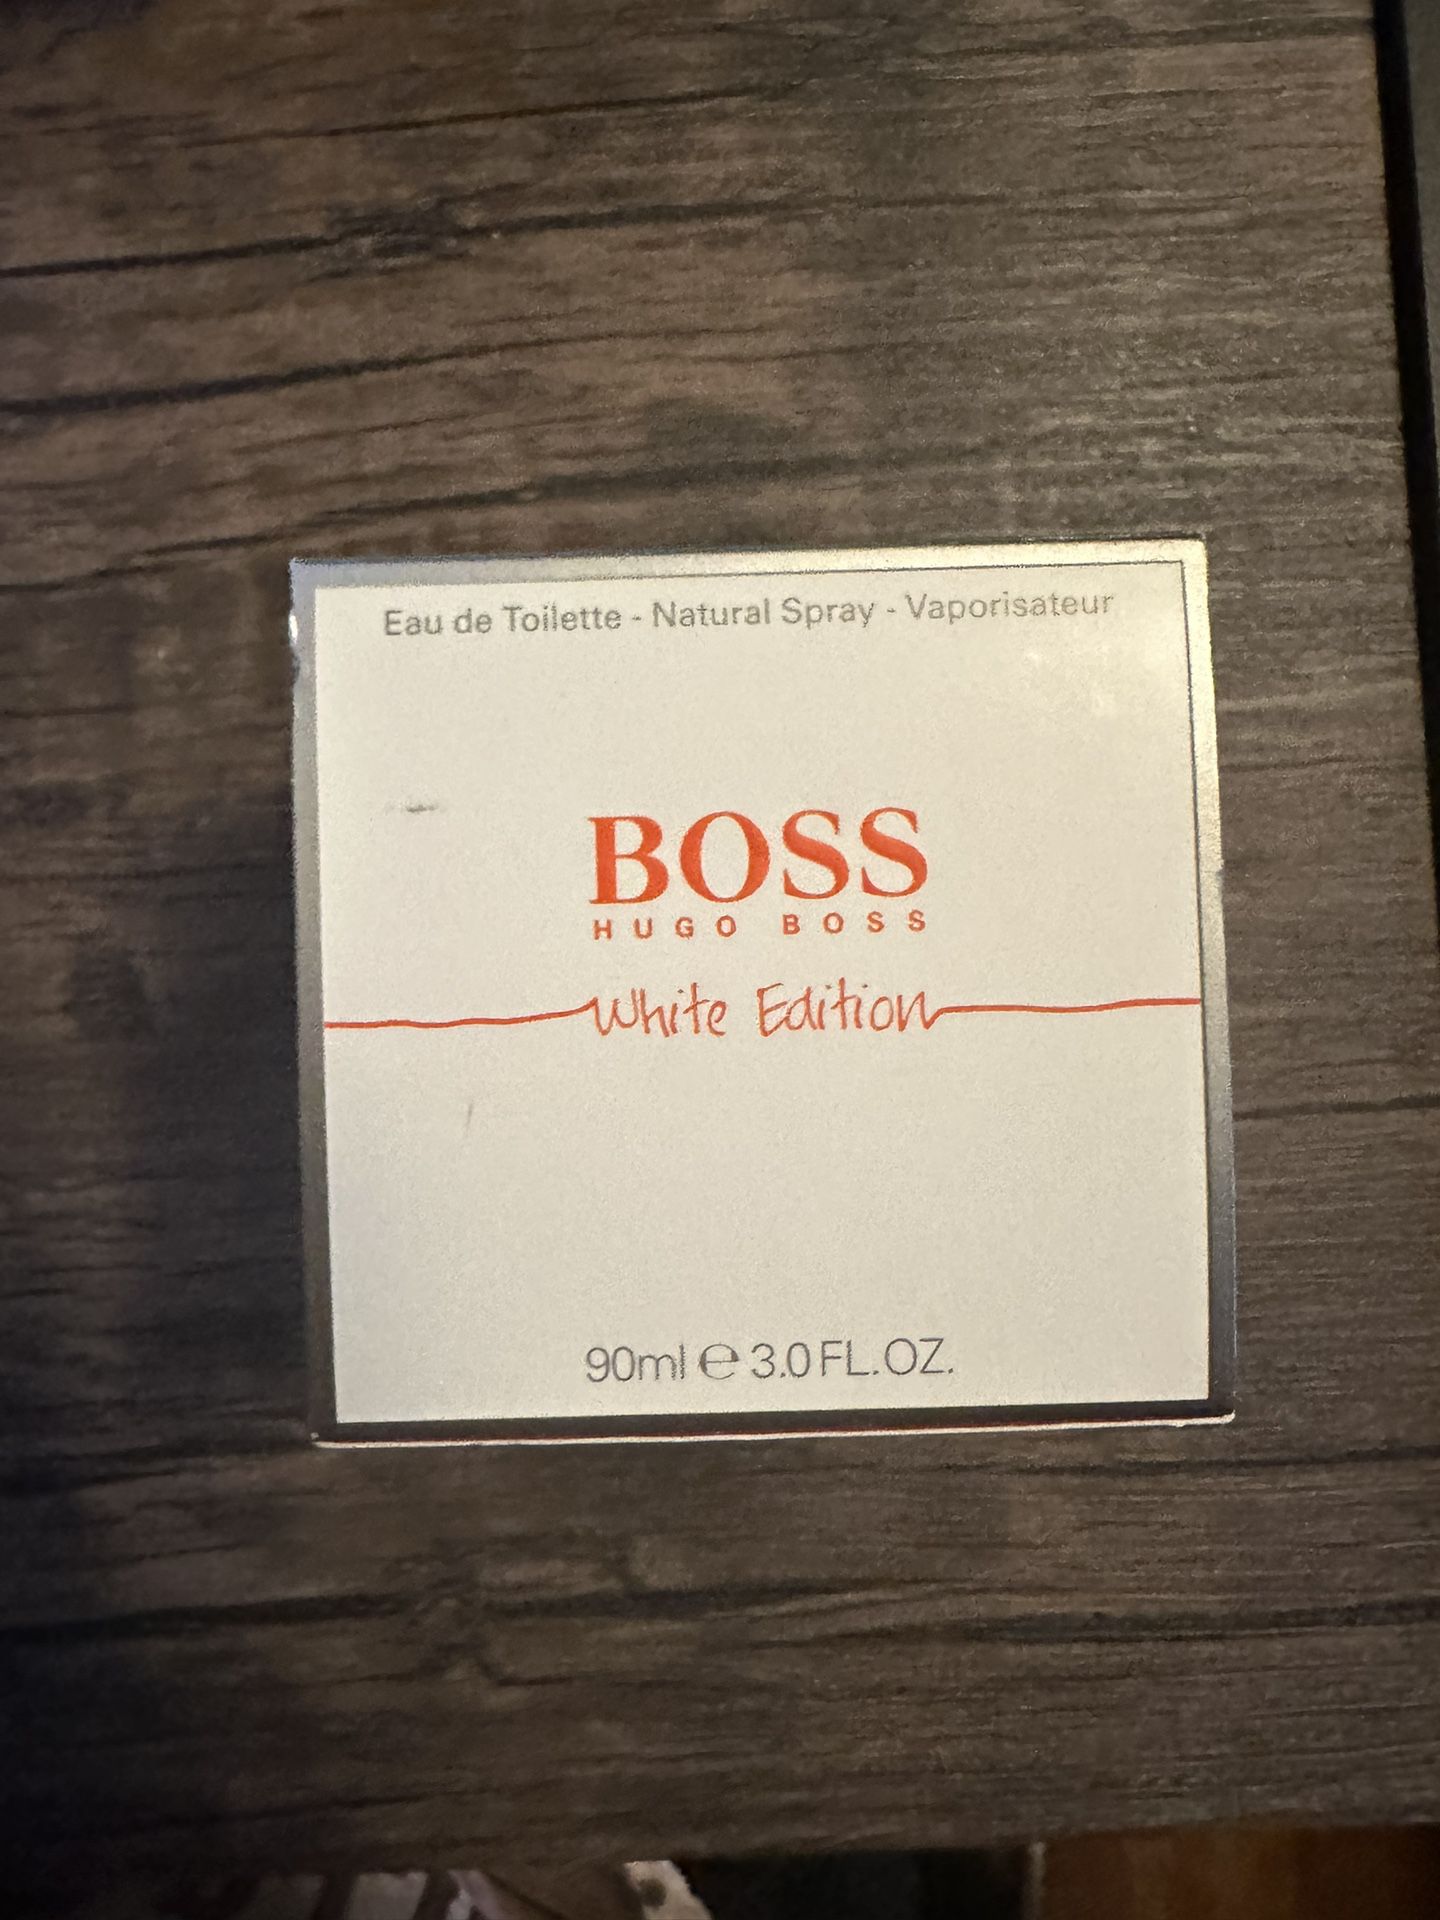 BOSS IN MOTION WHITE EDITION * Hugo Boss 3.0 oz / 90 ml EDT Men Cologne Spray